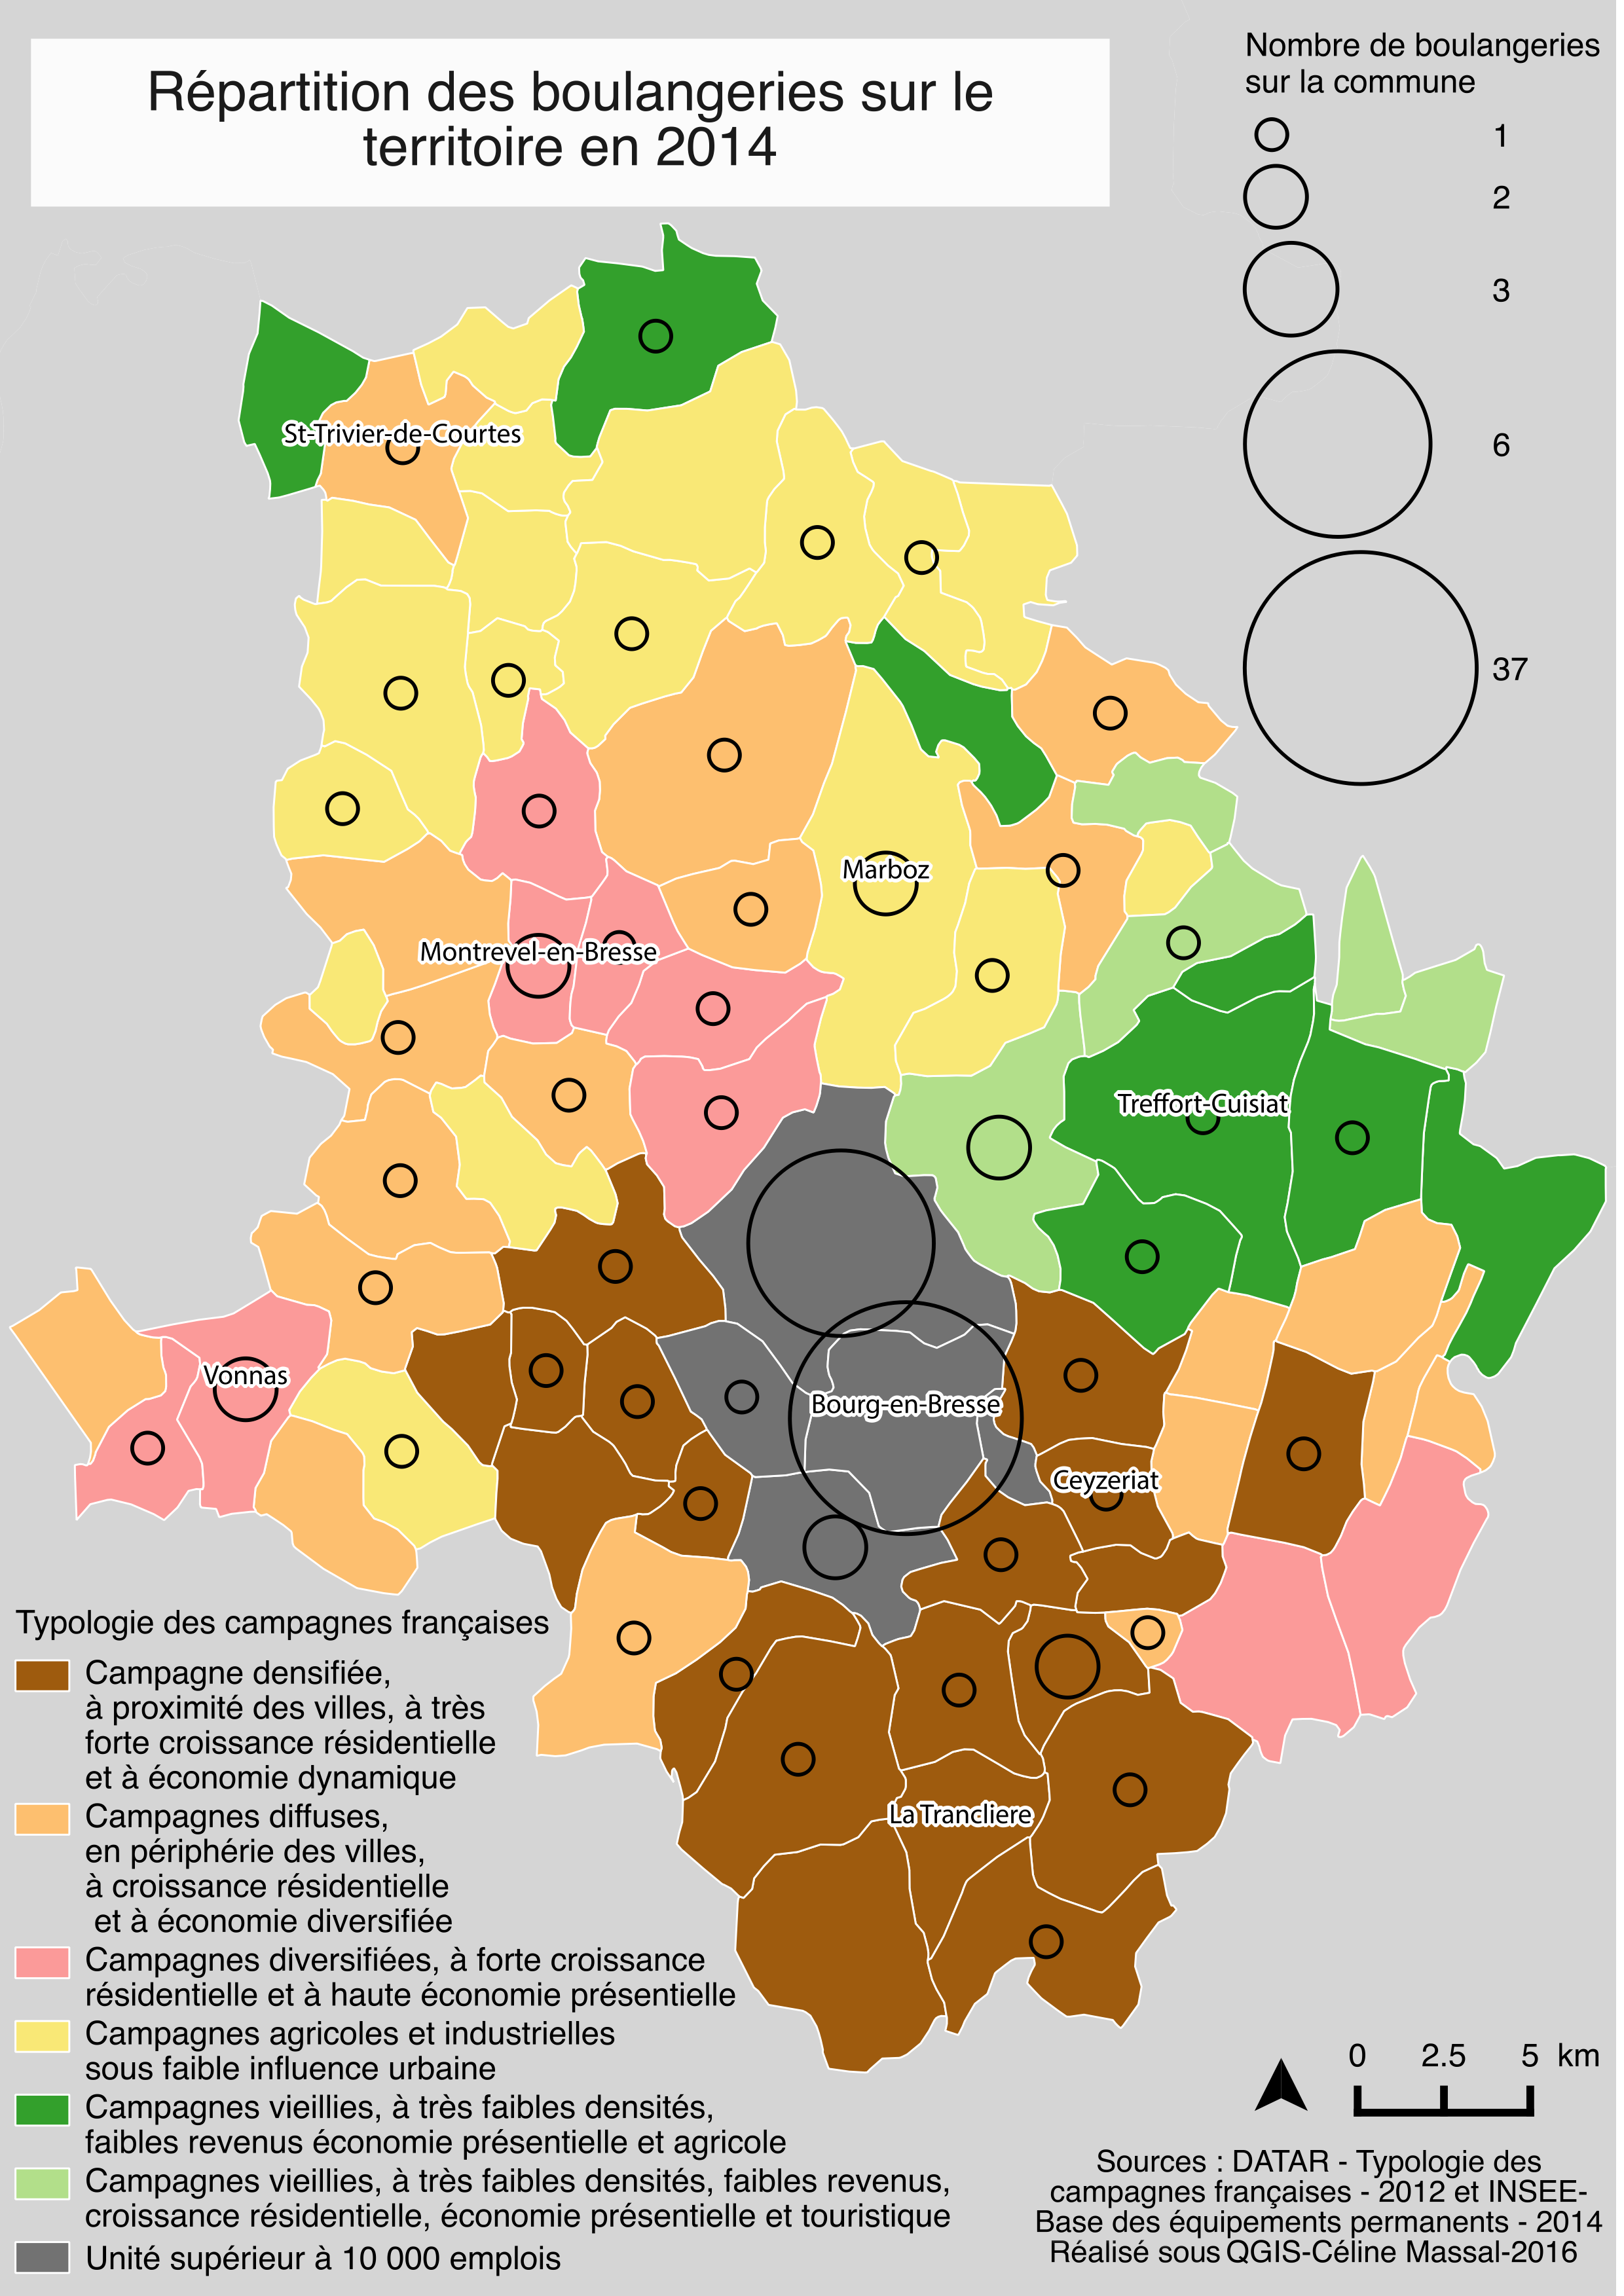 Répartition des boulangeries sur le territoire bressan en 2014 (haute définition)